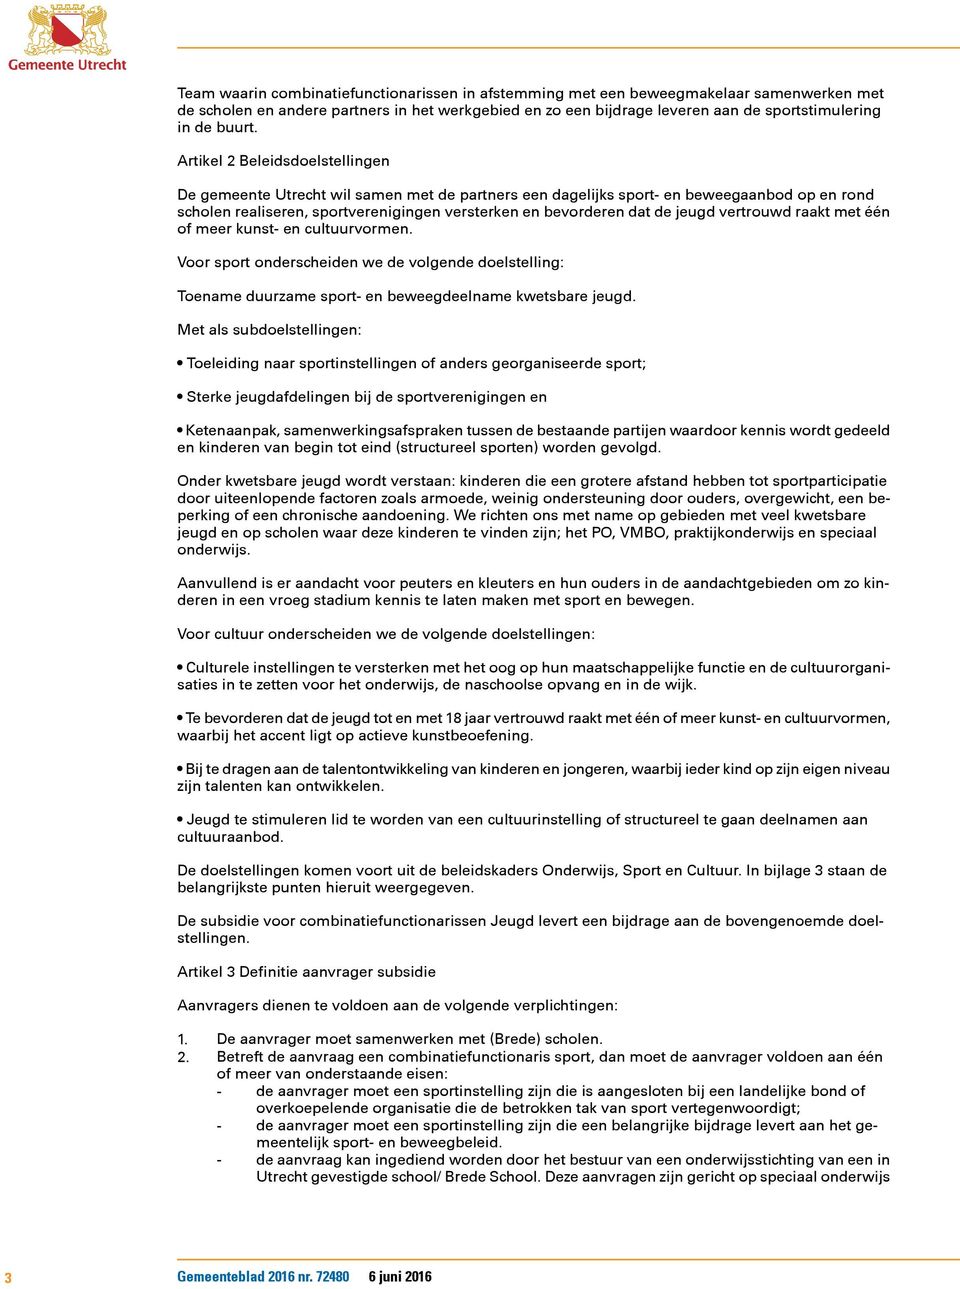 Artikel 2 Beleidsdoelstellingen De gemeente Utrecht wil samen met de partners een dagelijks sport- en beweegaanbod op en rond scholen realiseren, sportverenigingen versterken en bevorderen dat de